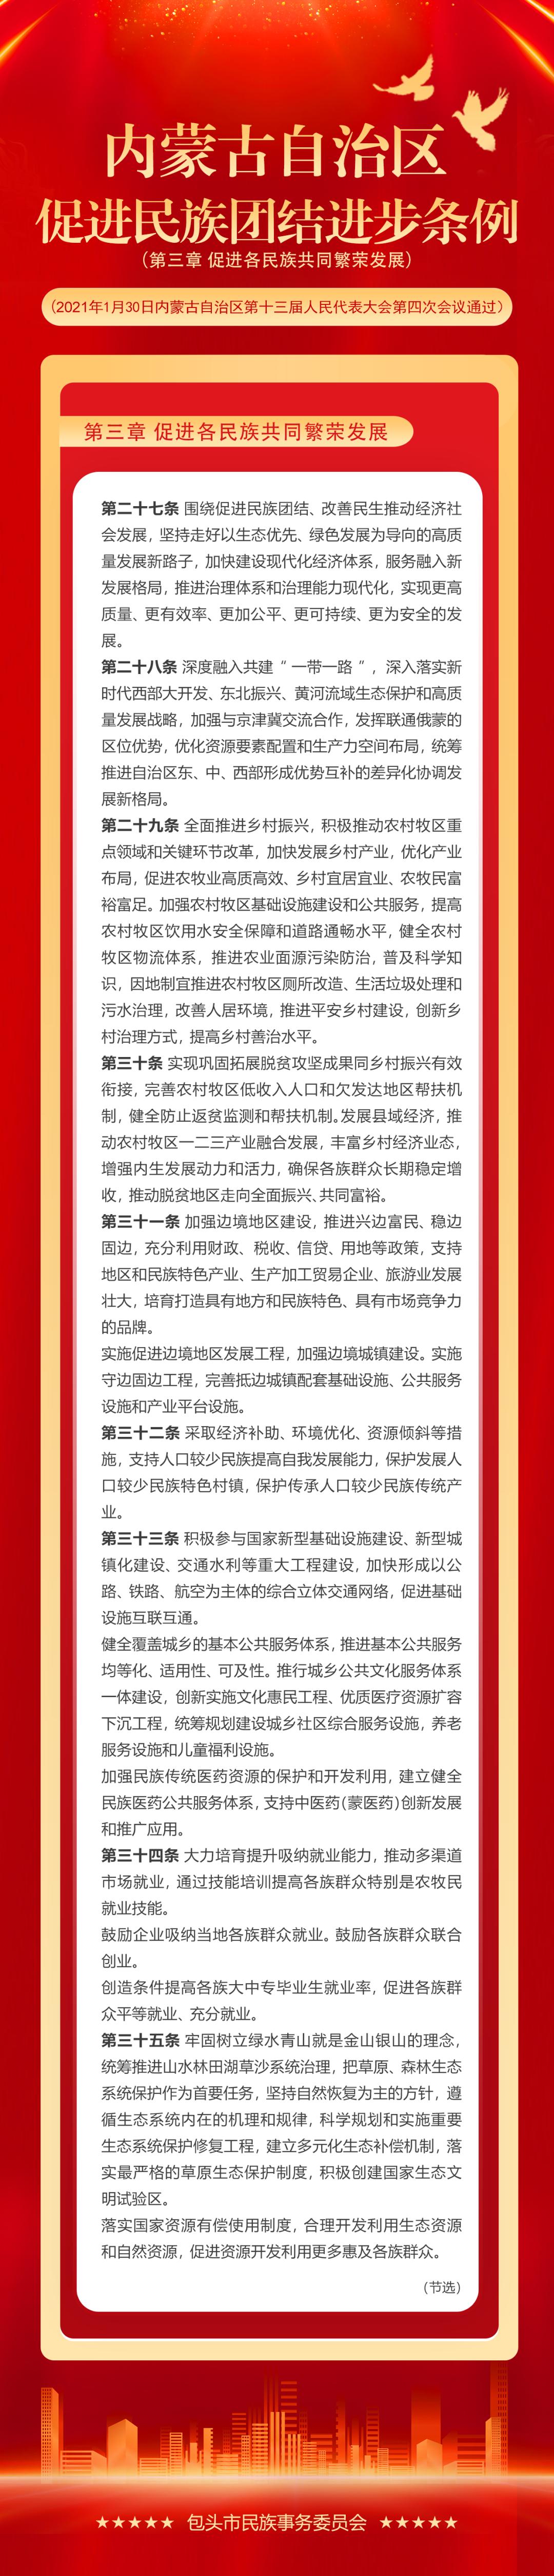 民族政策宣传月丨《内蒙古自治区促进民族团结进步条例》(第三章)